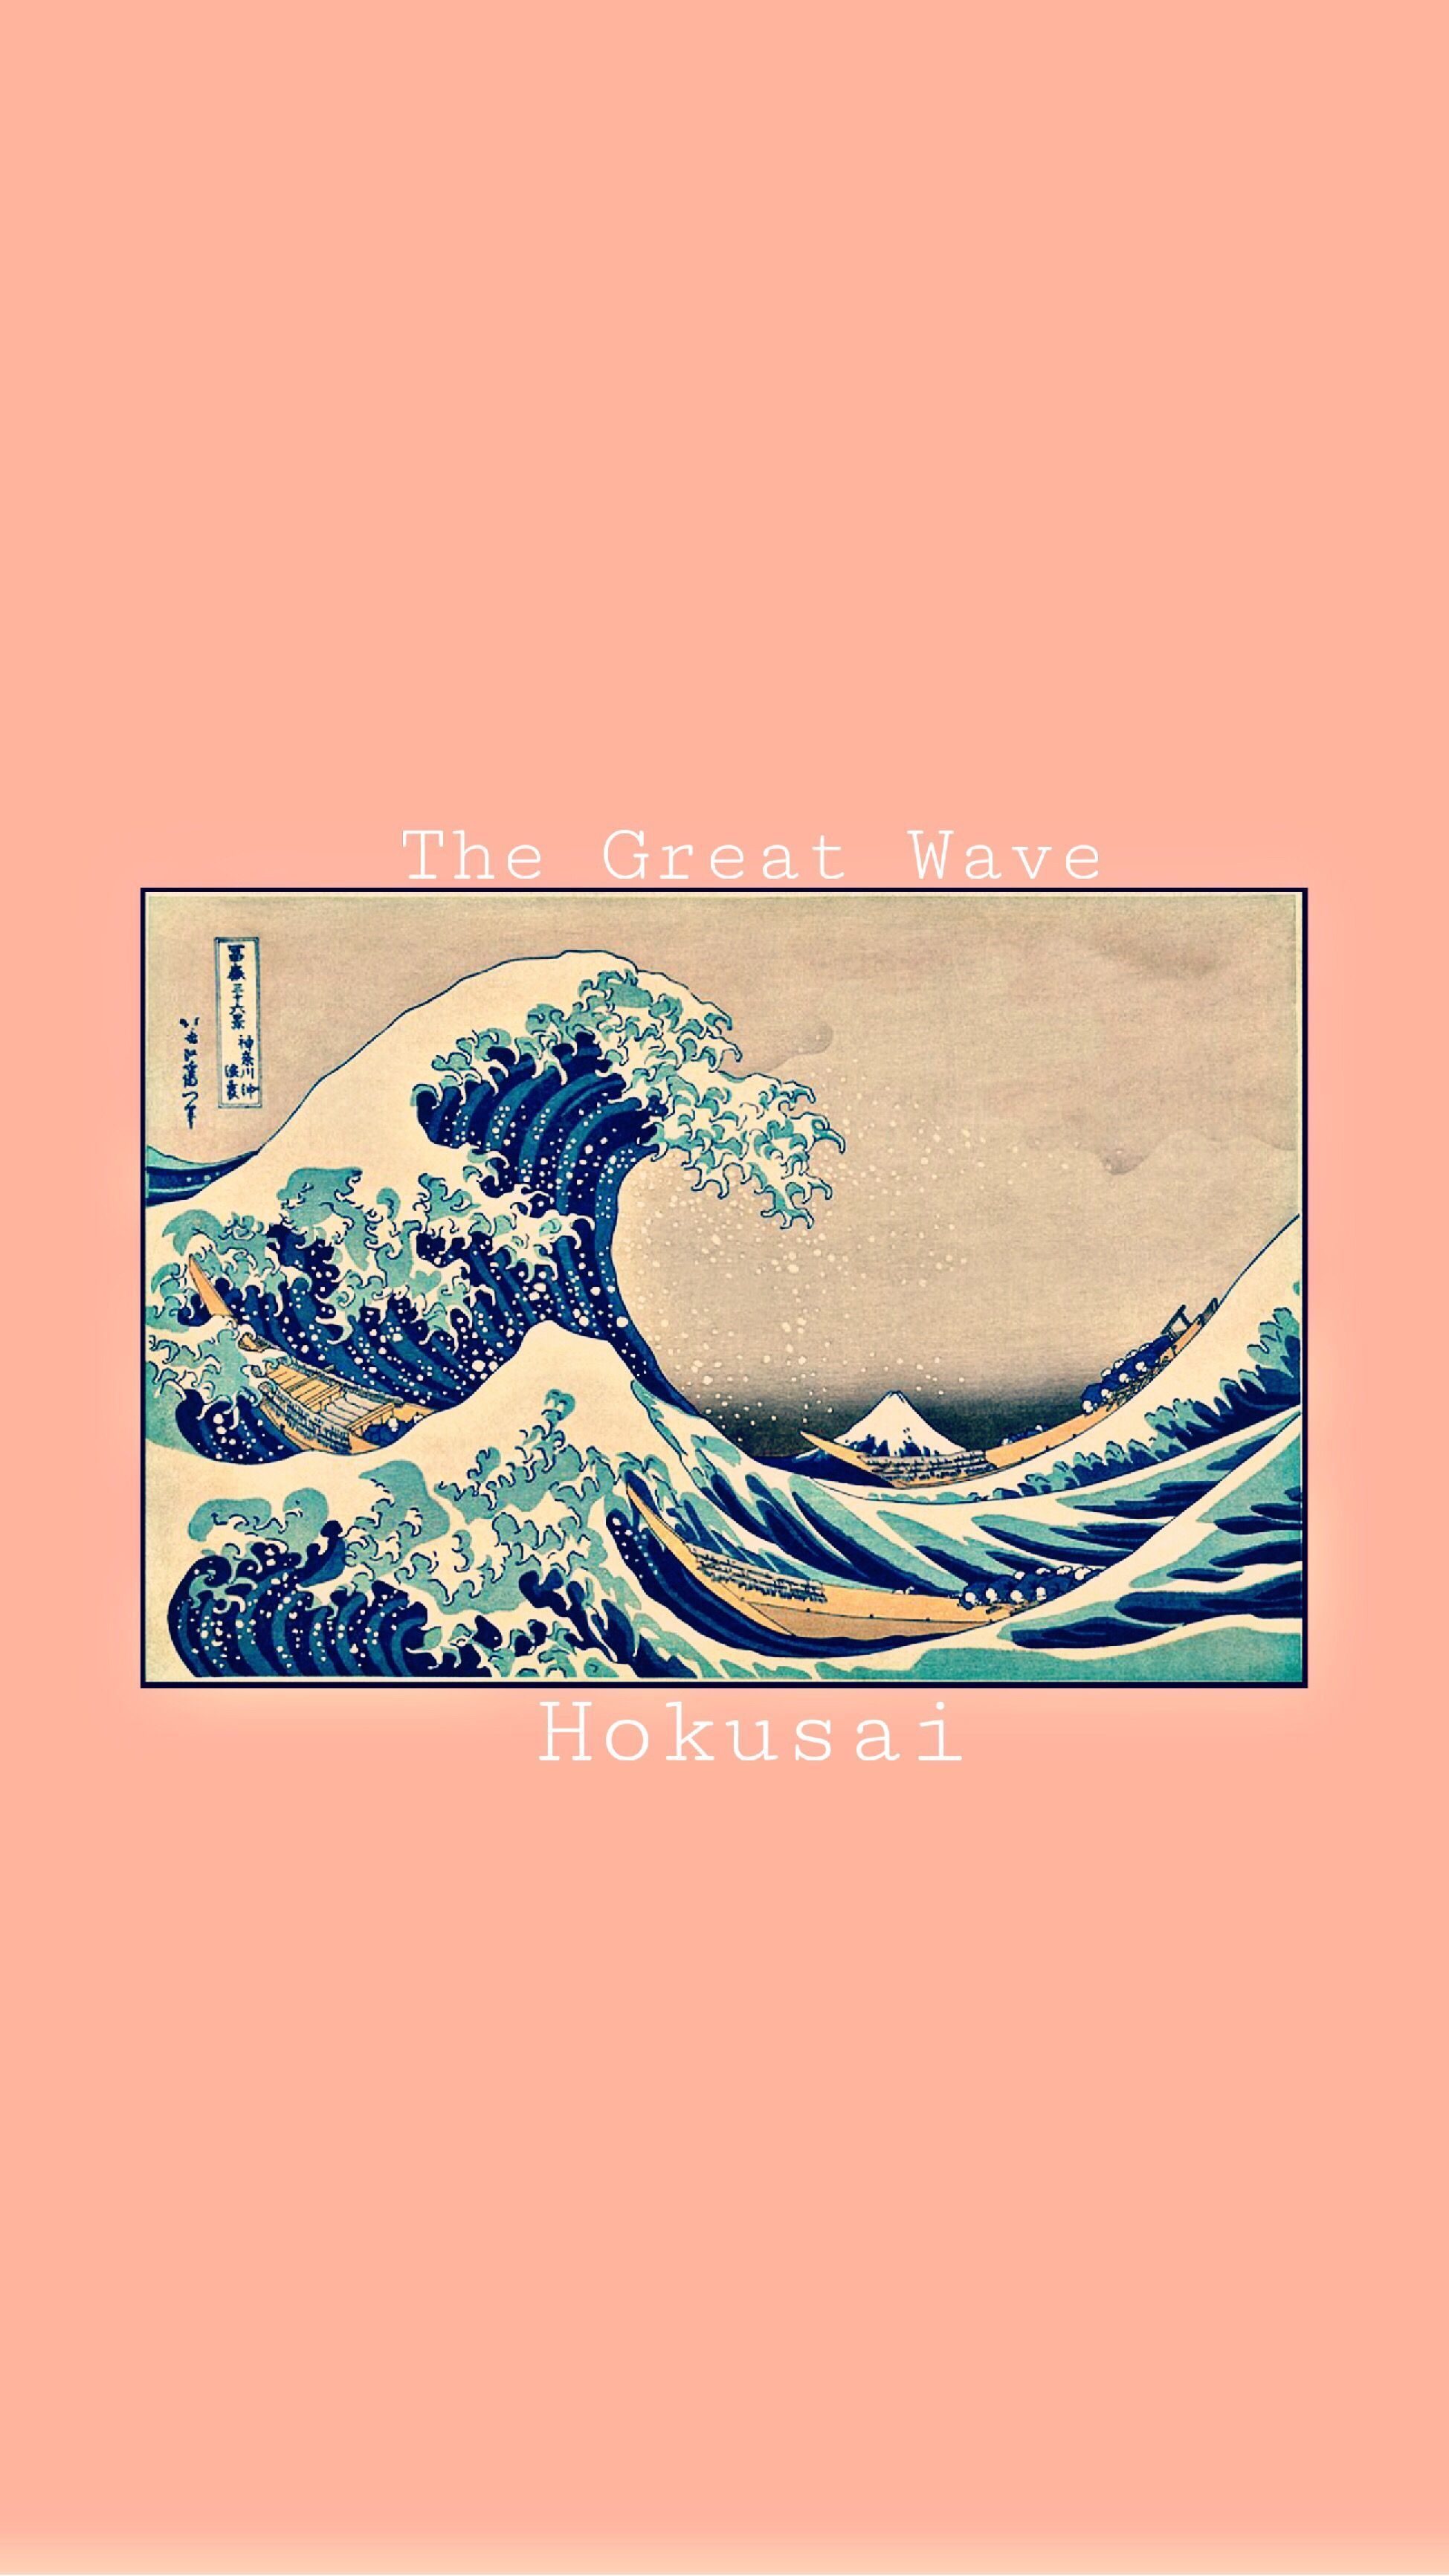 Hokusai The Great Wave wallpaper for iPhone #wallpaper #thegreatwave # hokusai #pink #pinkaesthetic. Художники, Тату для парня, Рисунки